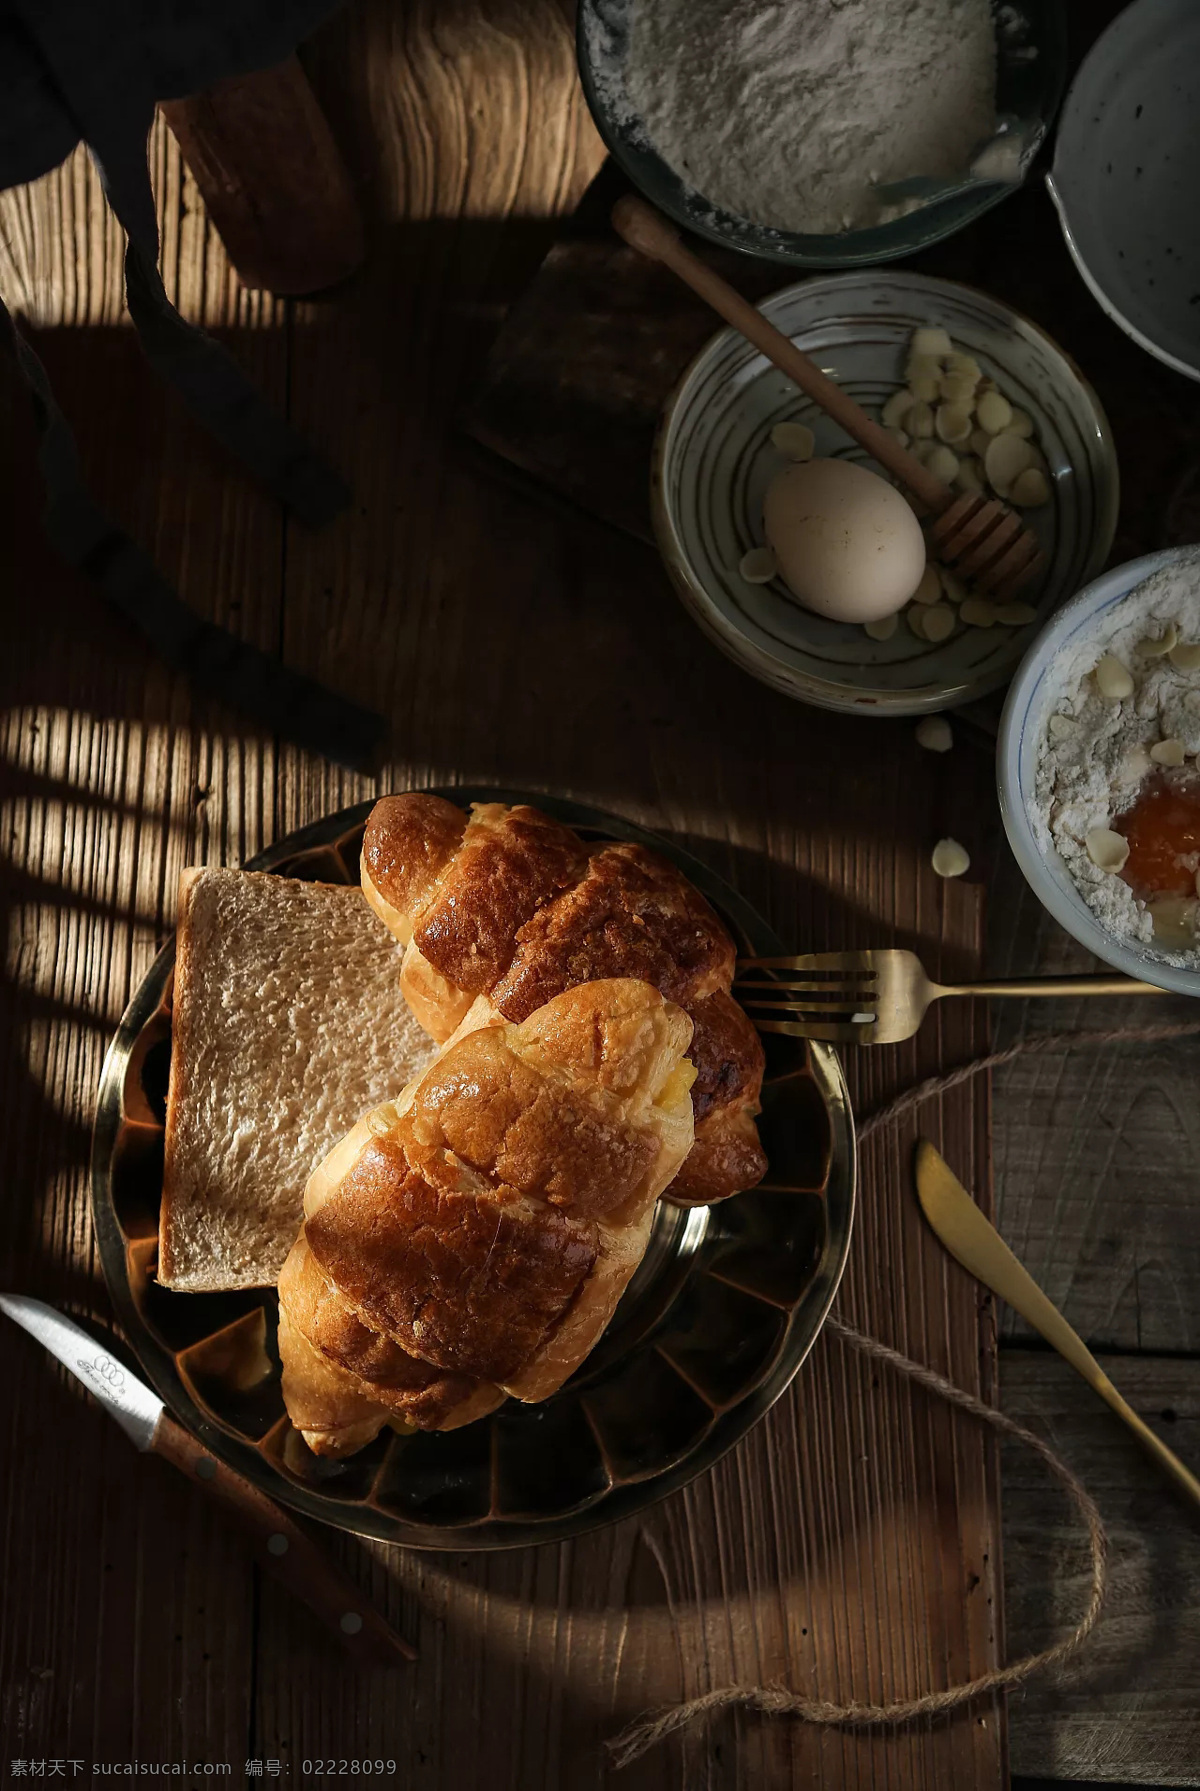 面包摄影素材 欧包 软欧 面包 早餐 欧洲 大面包 欧式面包 天然酵母 法式面包 面包组合 欧包面包 烤面包 网红欧包 人气美食 西餐 火爆面包 烘焙 餐饮美食 西餐美食 传统美食